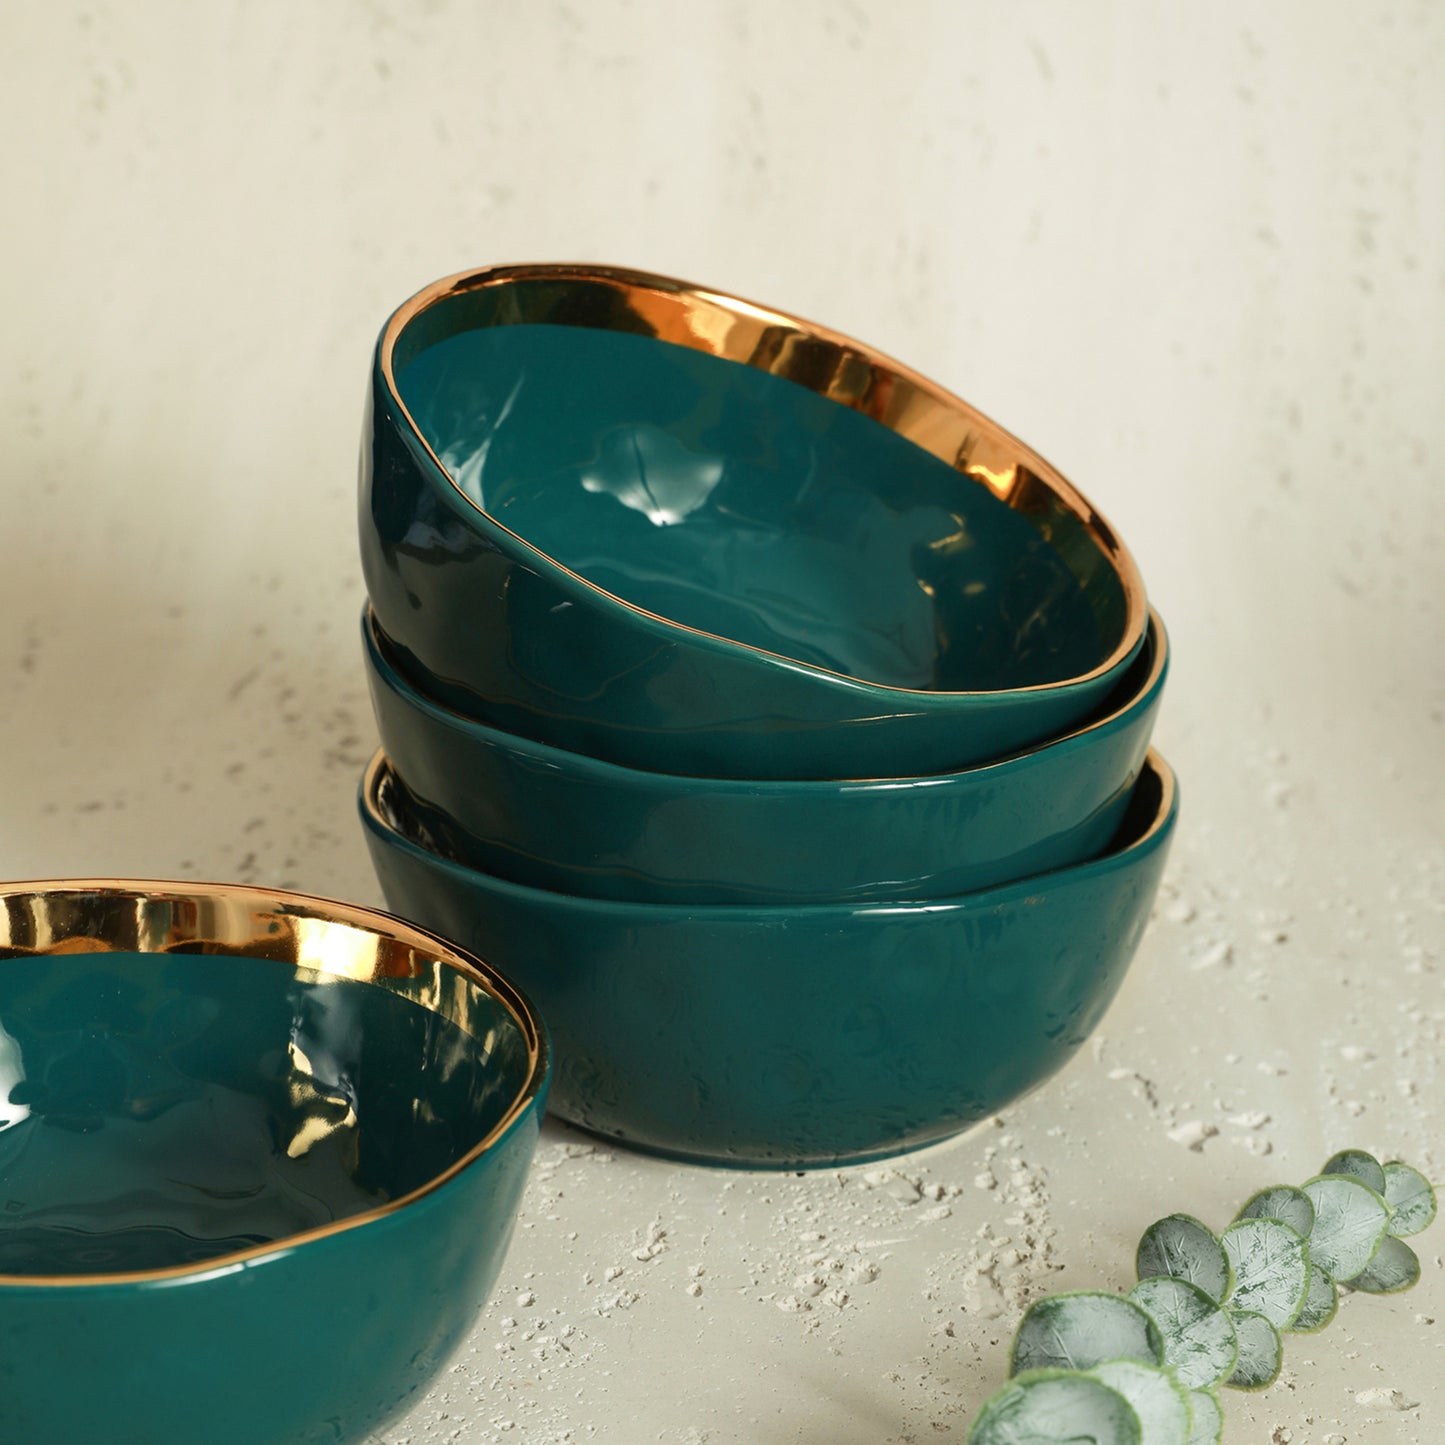 Florian Porcelain Dinnerware Set - Green